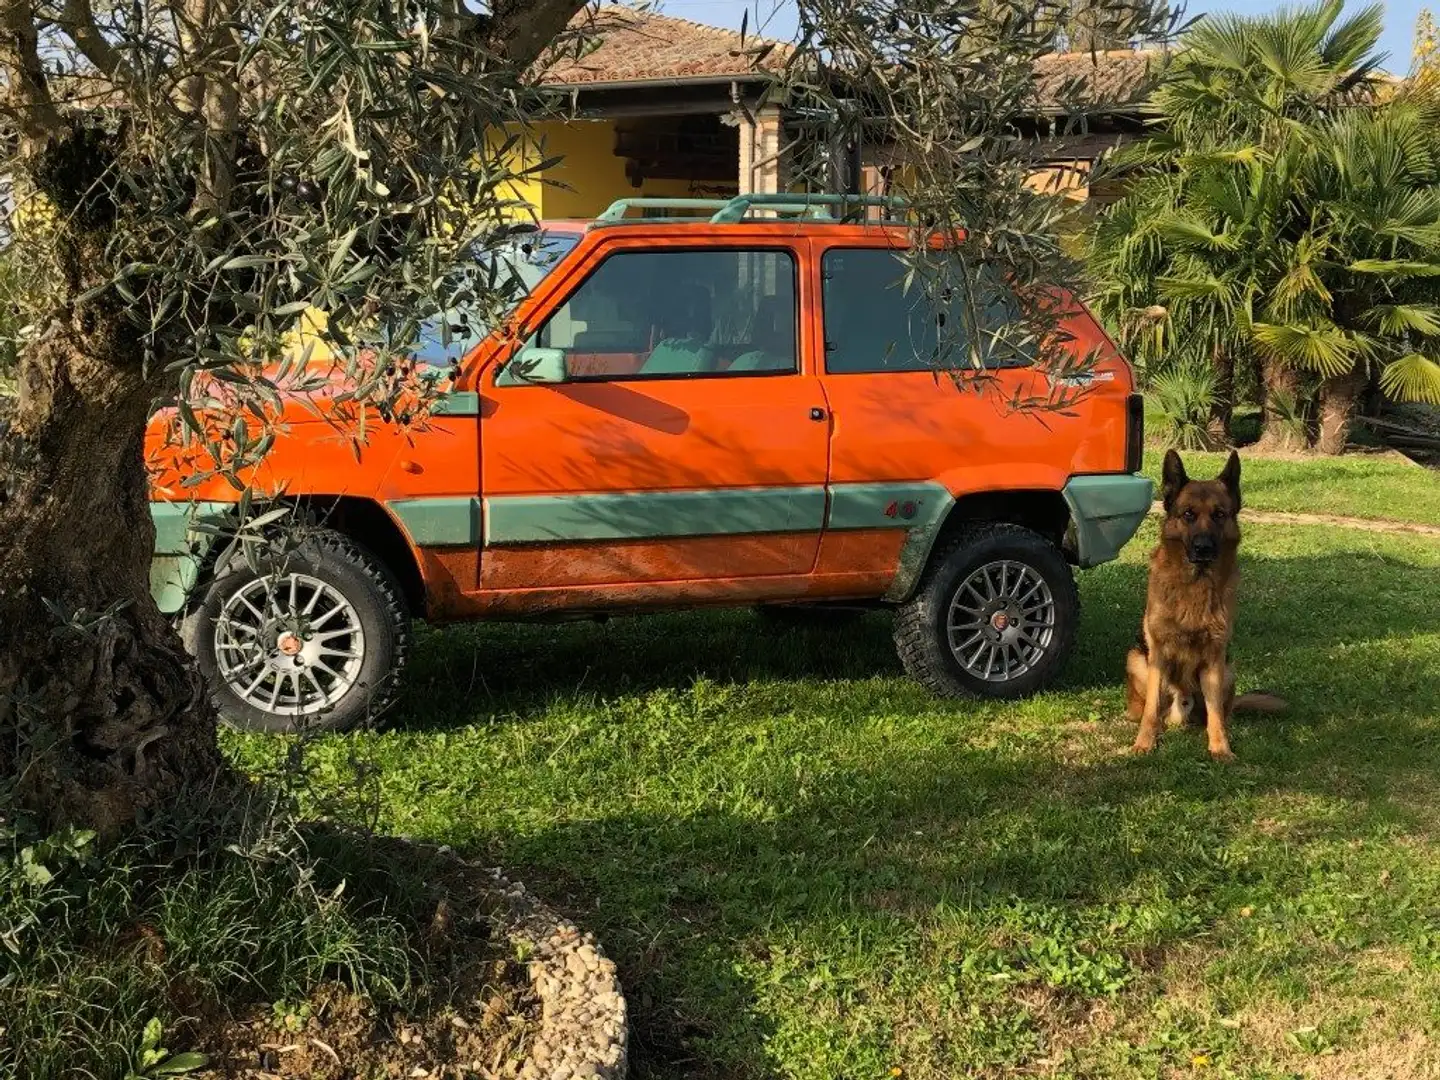 Fiat Panda 4 x 4 leggi 4 ruote, ruoteclassiche cgamotors.it Arancione - 2